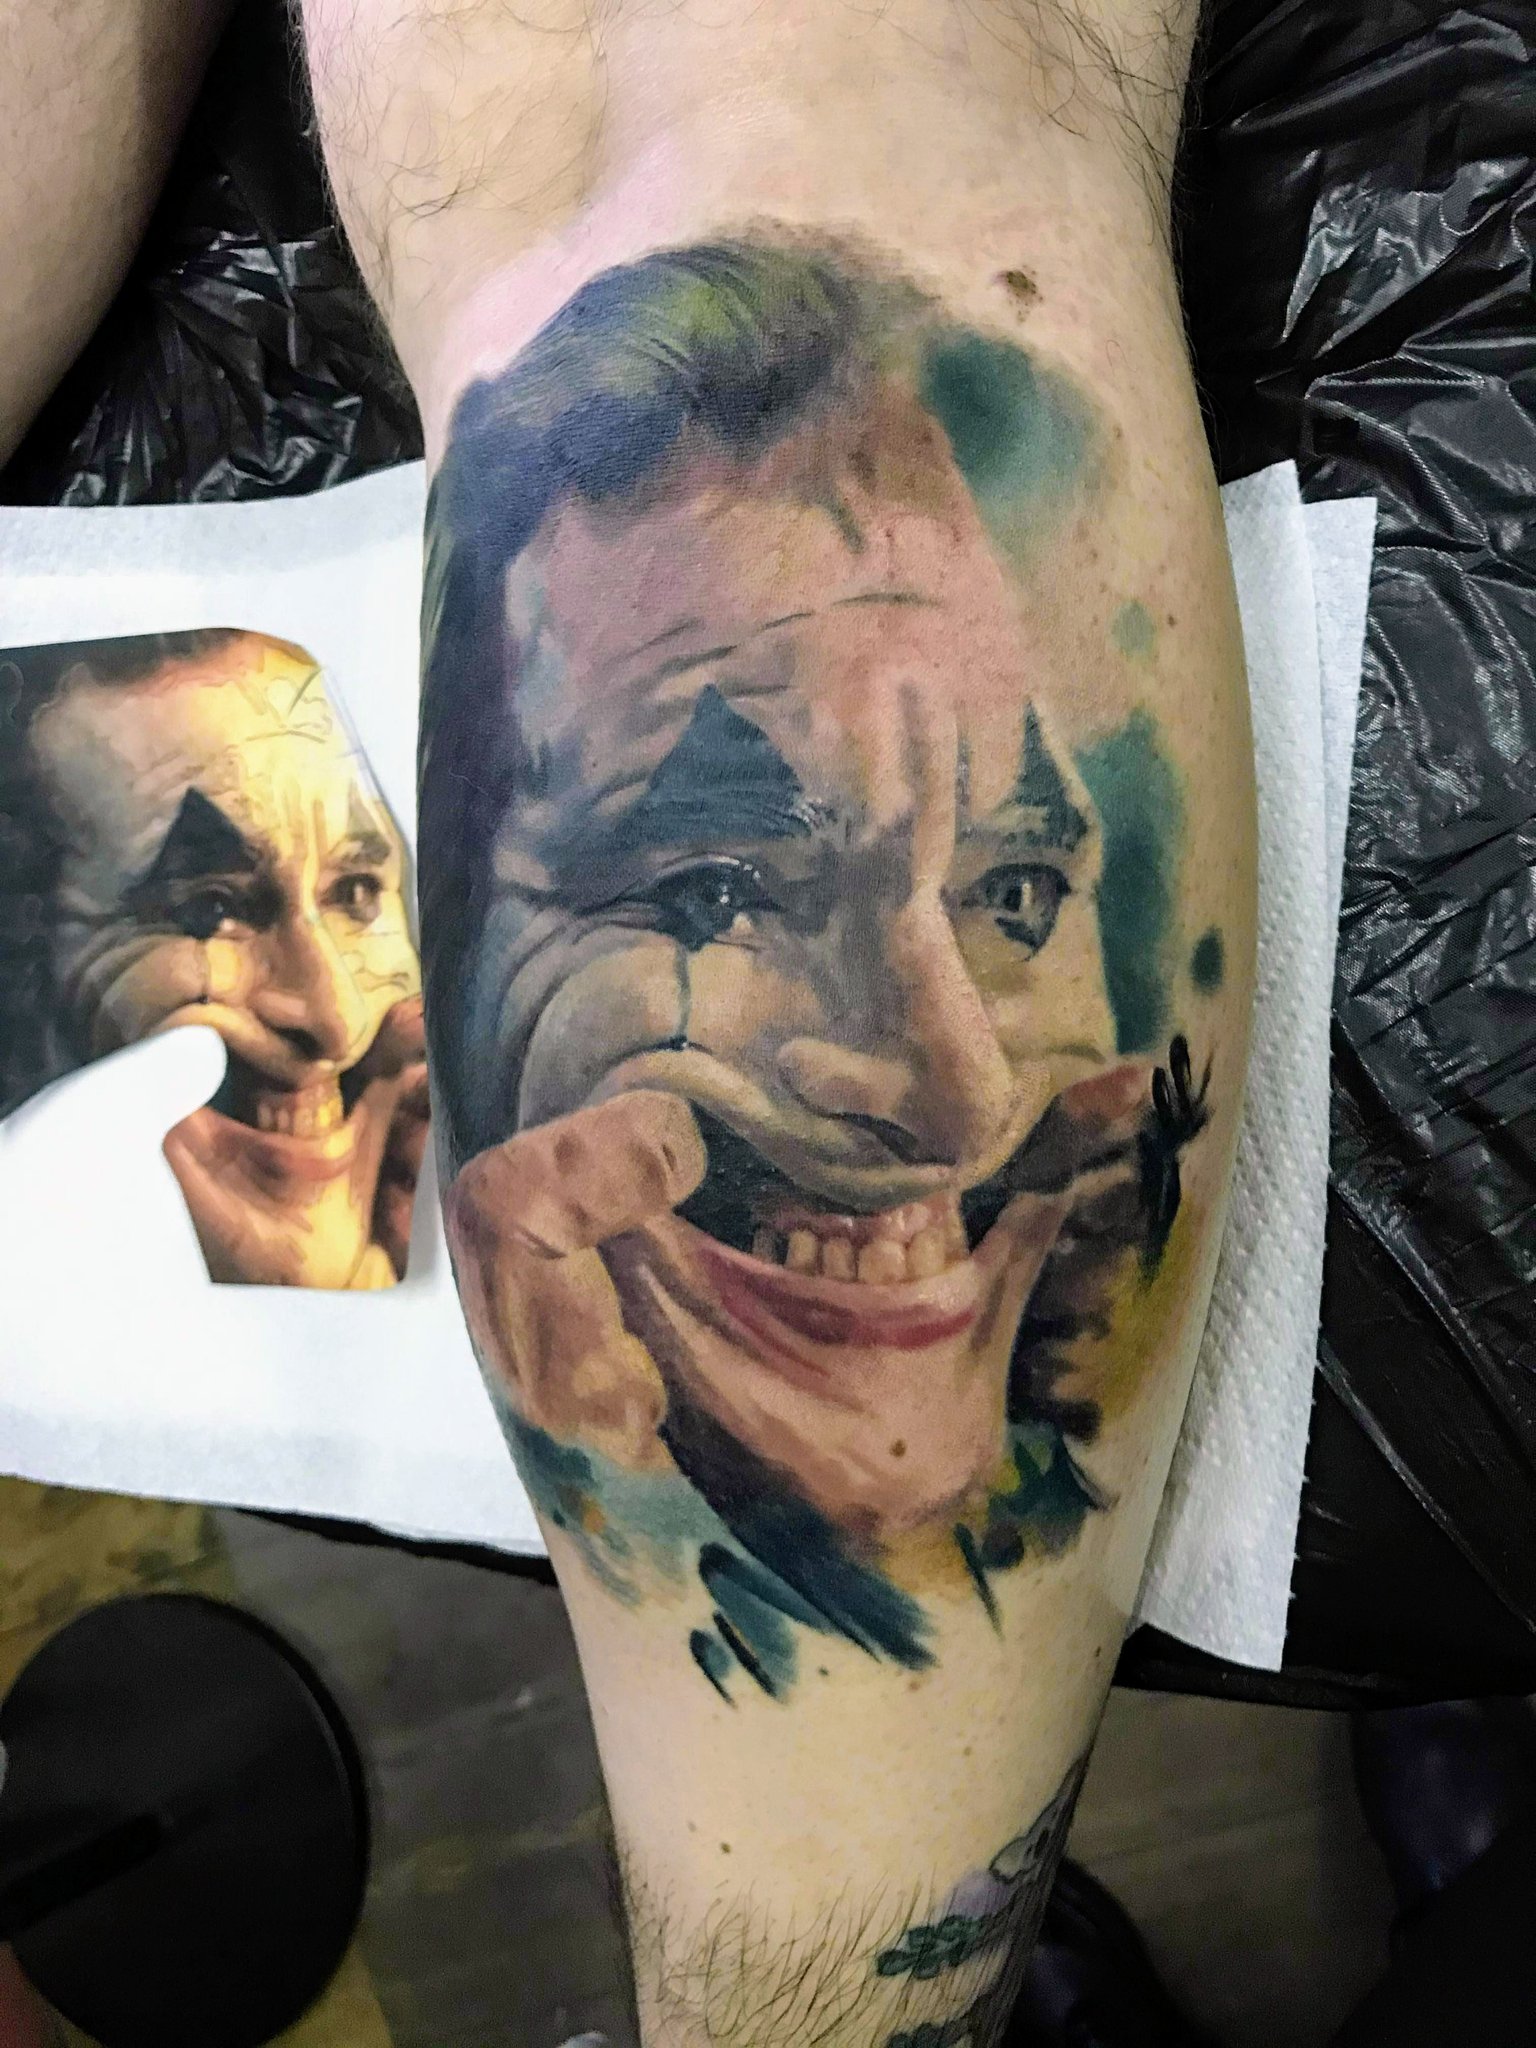 Smile tattoo designs  Smile tattoo on hand  Joker smile tattoo on hand   Lets style buddy  YouTube